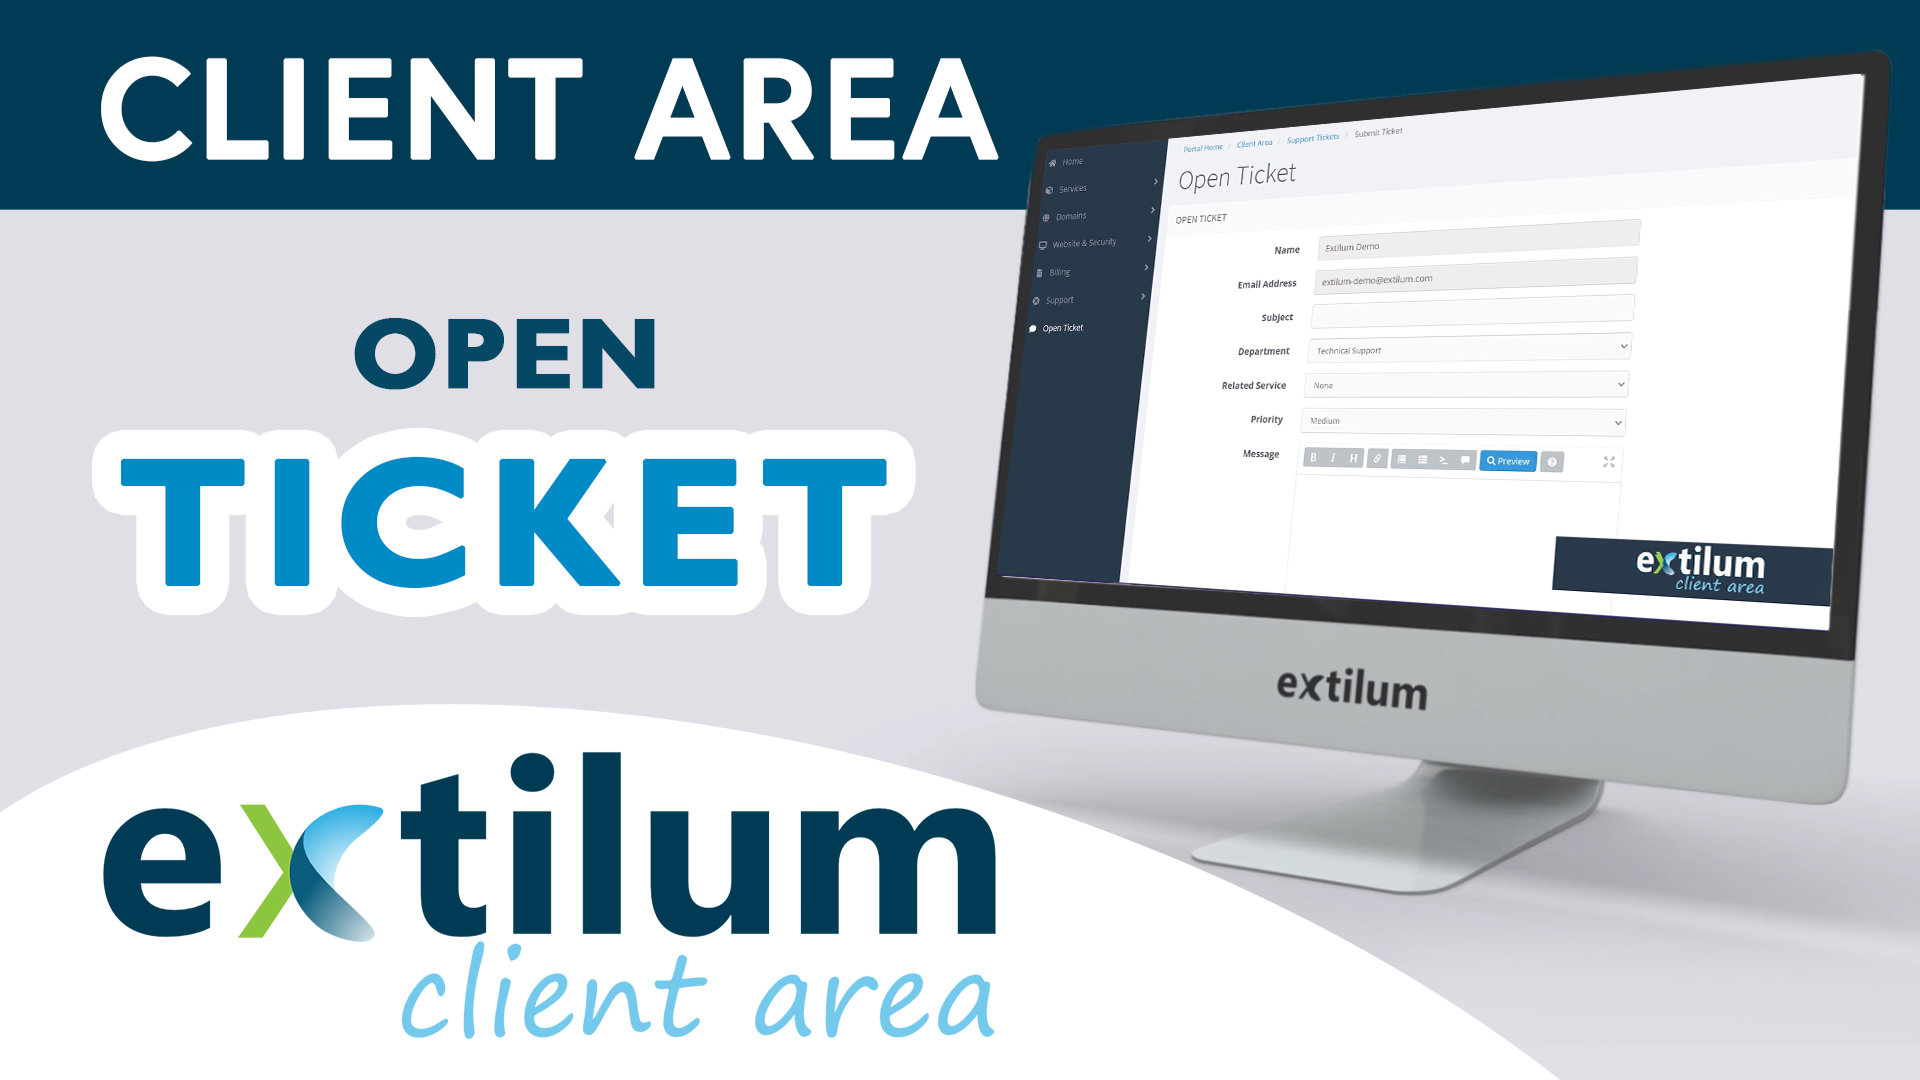 Extilum Client Area - Open Ticket